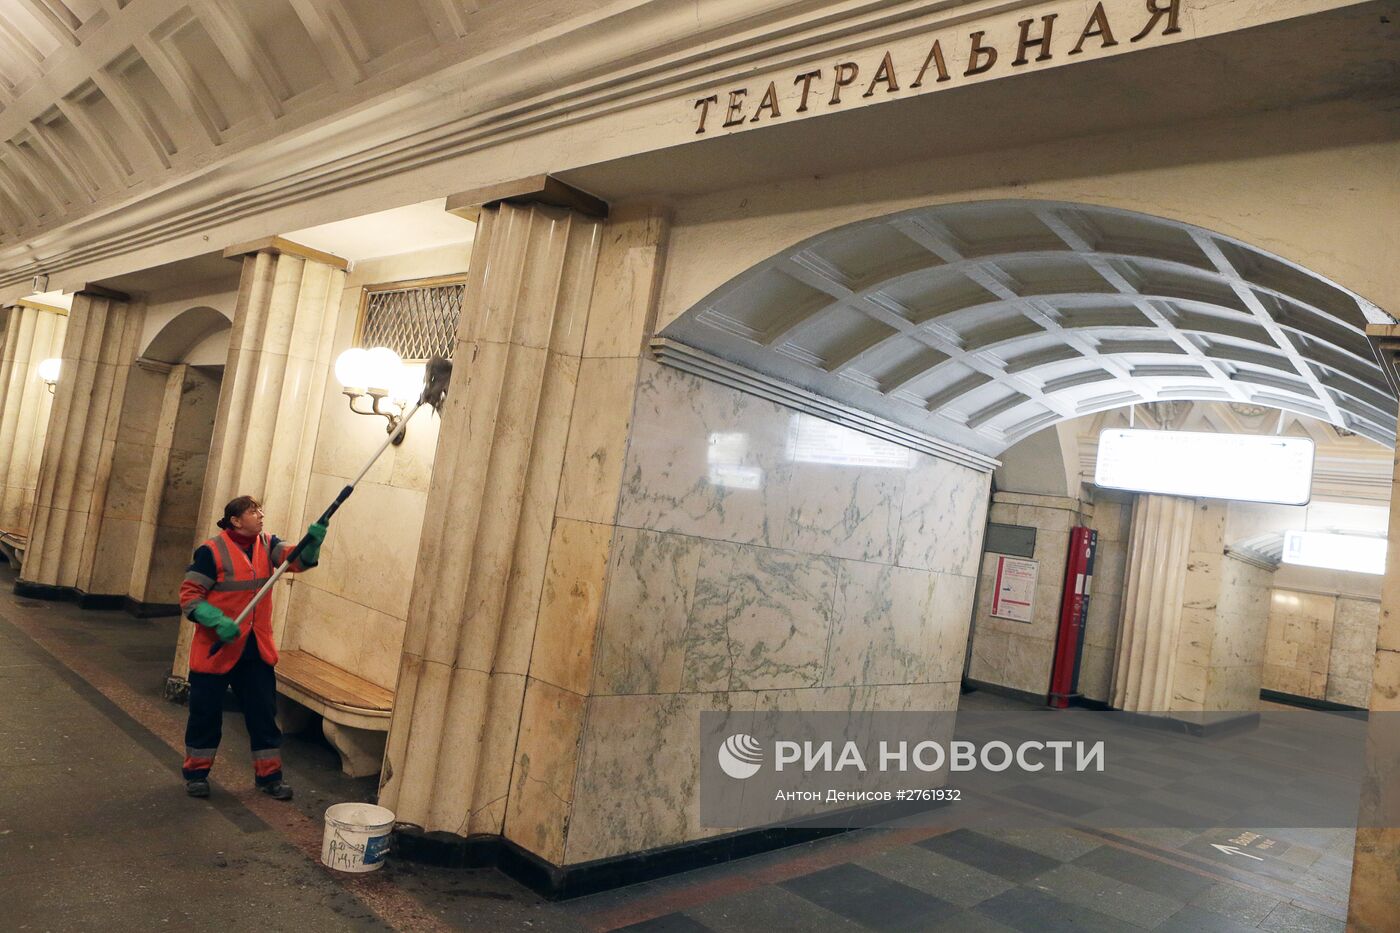 Участок Замоскворецкой линии метро на сутки закрывается на ремонт